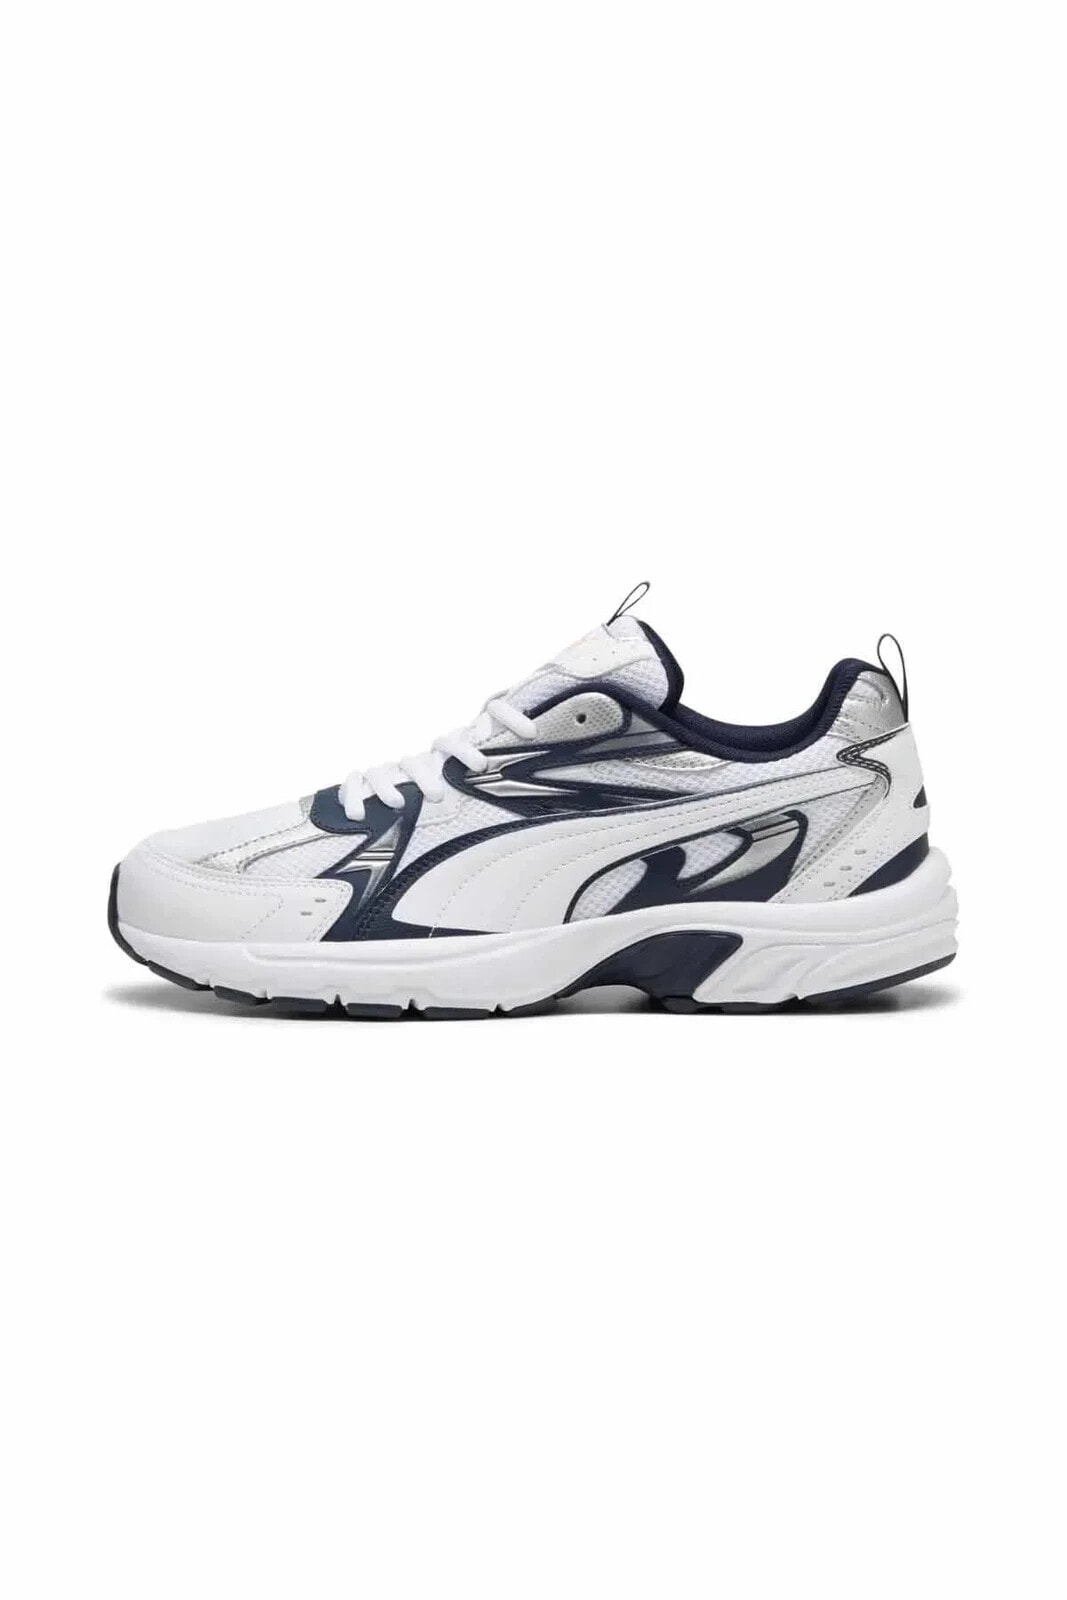 Unisex Spor Ayakkabı Milenio Tech-Club Navy-White Unisex Sneaker Ayakkabı 392322-05-2 Beyaz/Mav